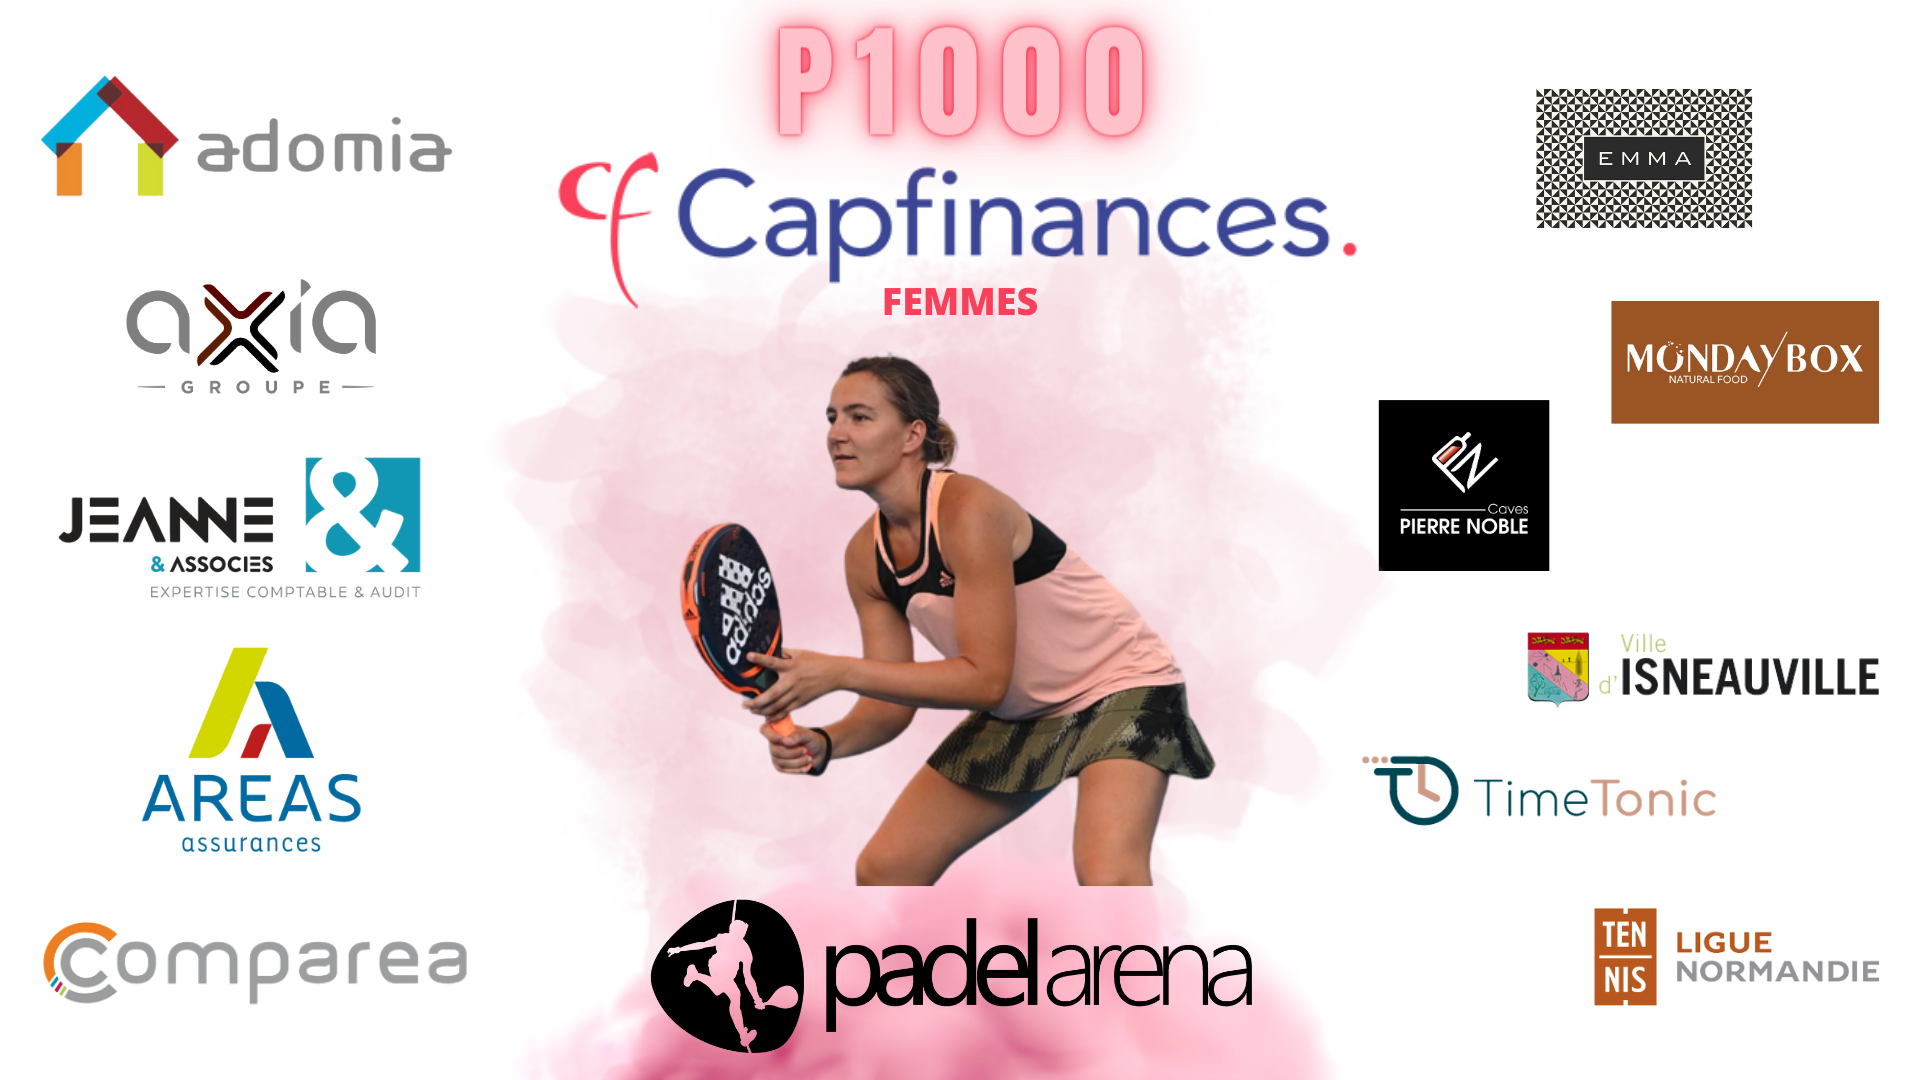 P1000 Open Cap-financiering - Padel Arena – Tabellen en programmering